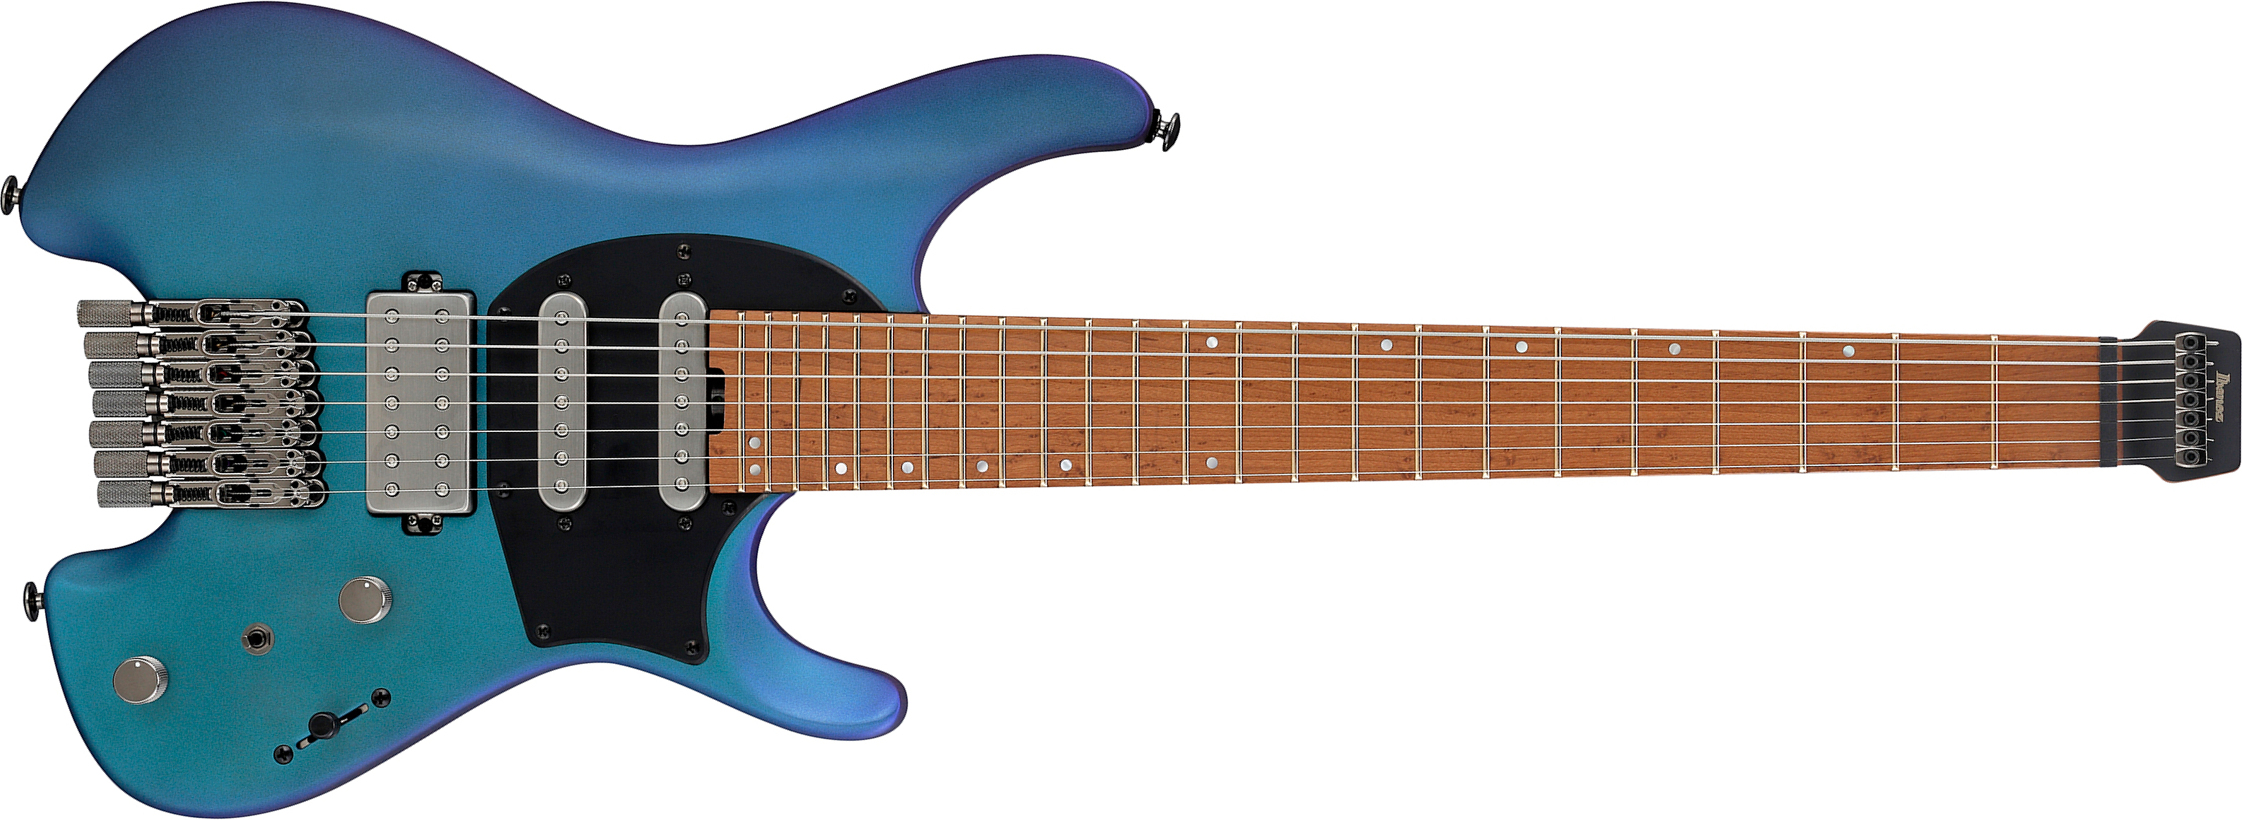 Ibanez Q547 Bmm Quest 7c Hss Ht Mn - Blue Chameleon Metallic Matte - Guitare Électrique 7 Cordes - Main picture